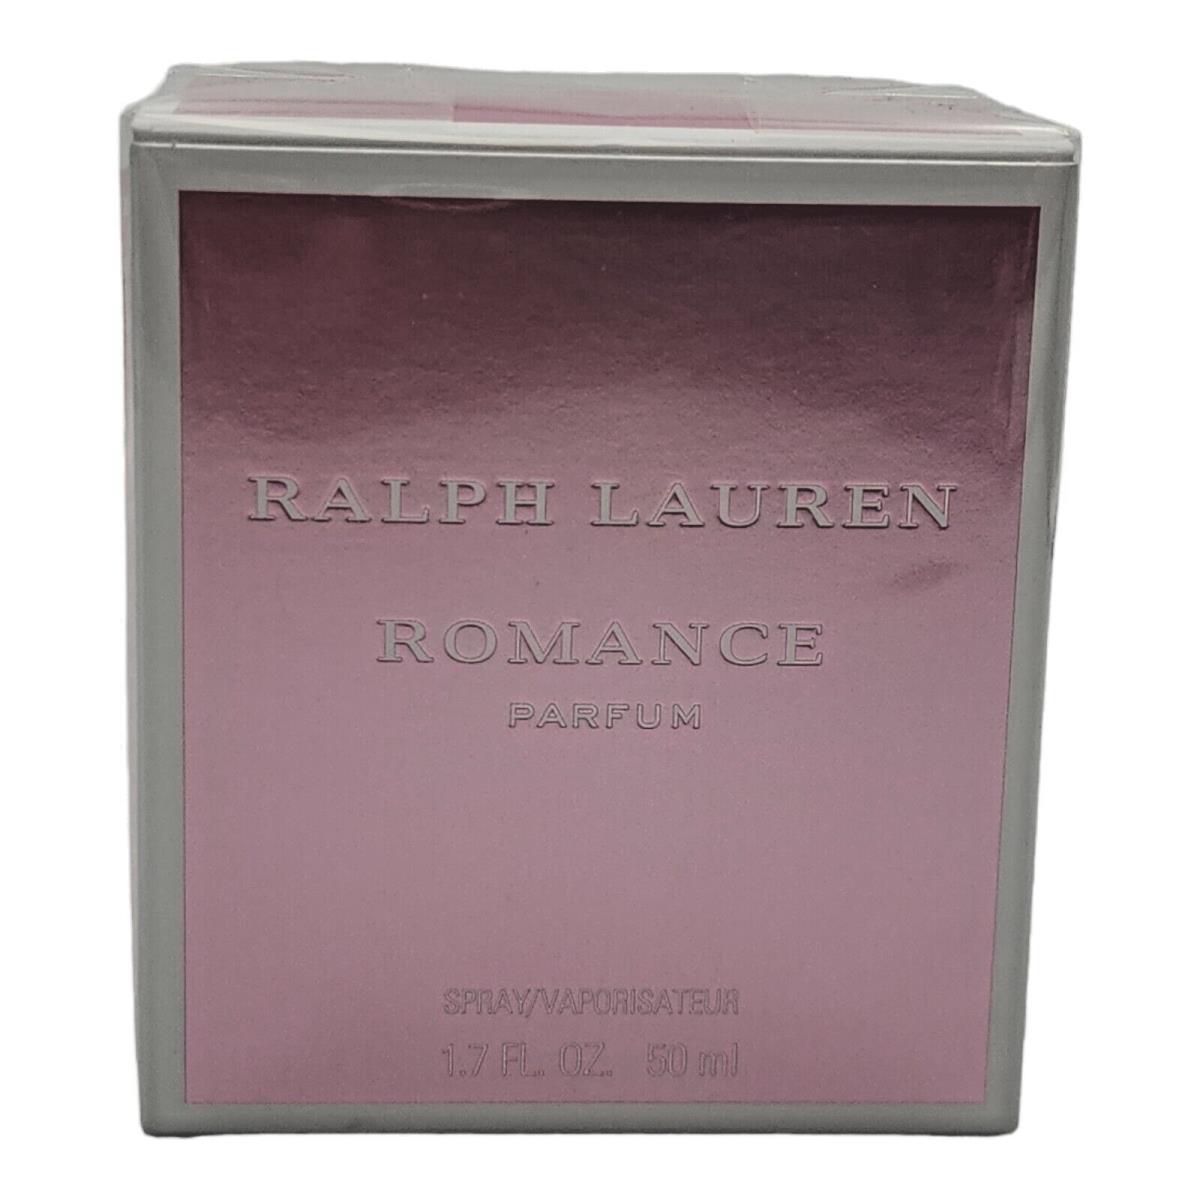 Romance by Ralph Lauren Eau de Parfum Spray 1.7 oz / 50 ml - Ralph Lauren  perfume,cologne,fragrance,parfum - 3605972535573